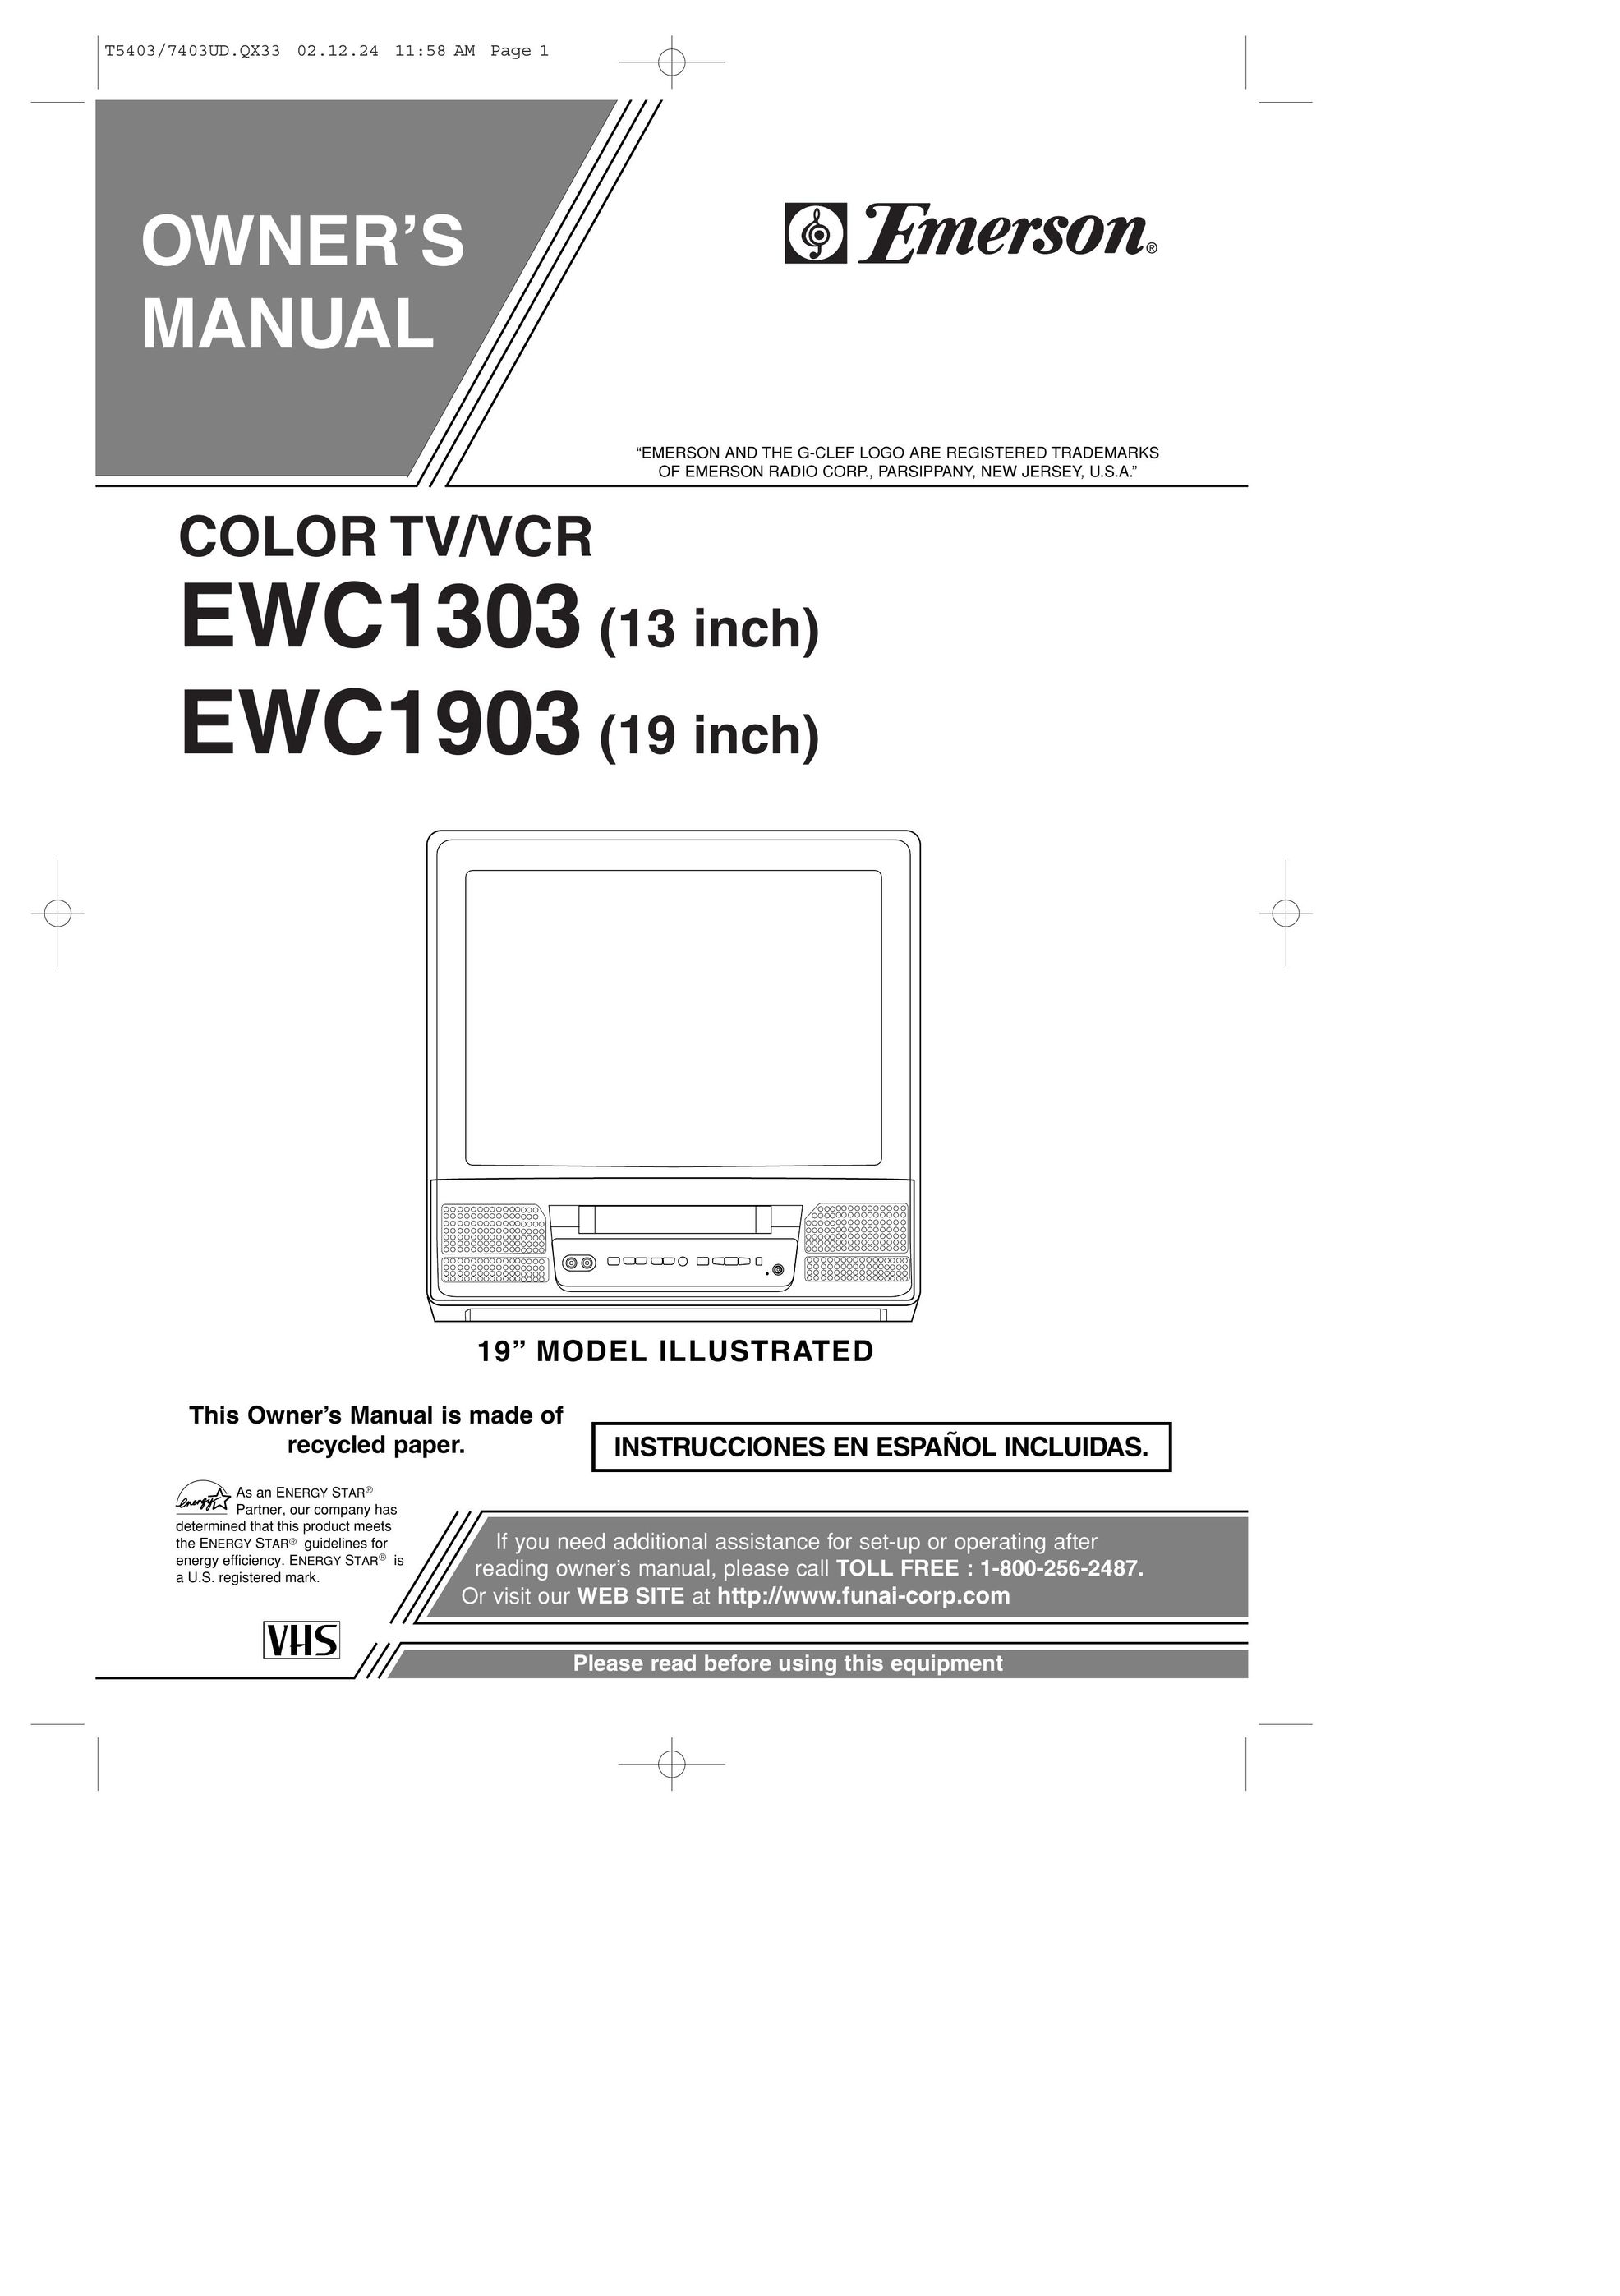 Emerson EWC1903 TV VCR Combo User Manual